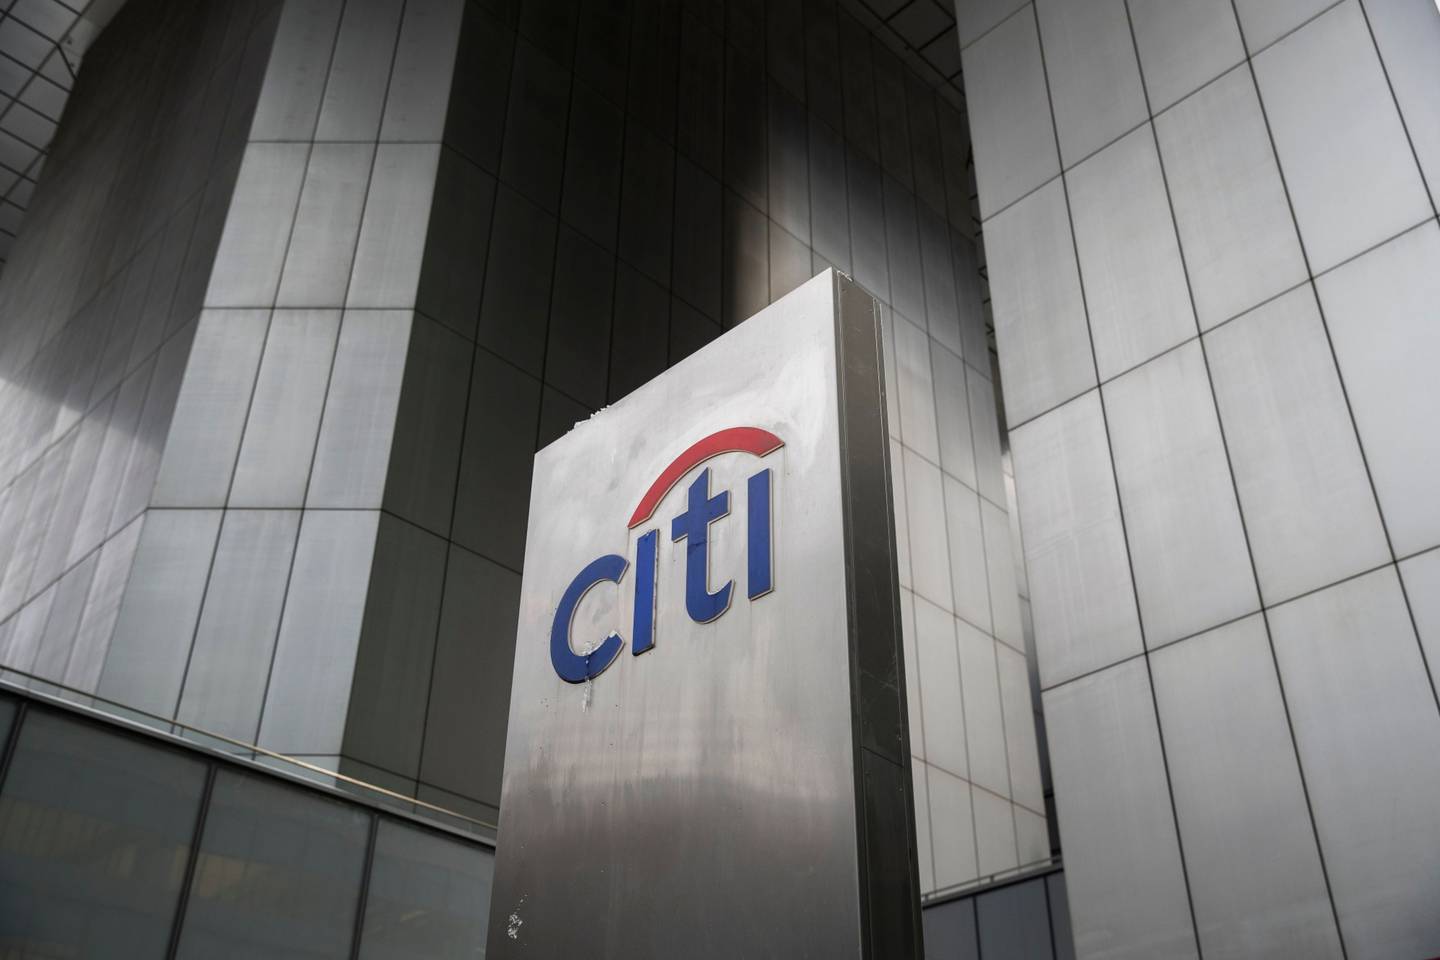 Sede de Citigroup en Nueva York, Estados Unidos, el viernes 7 de enero de 2022.